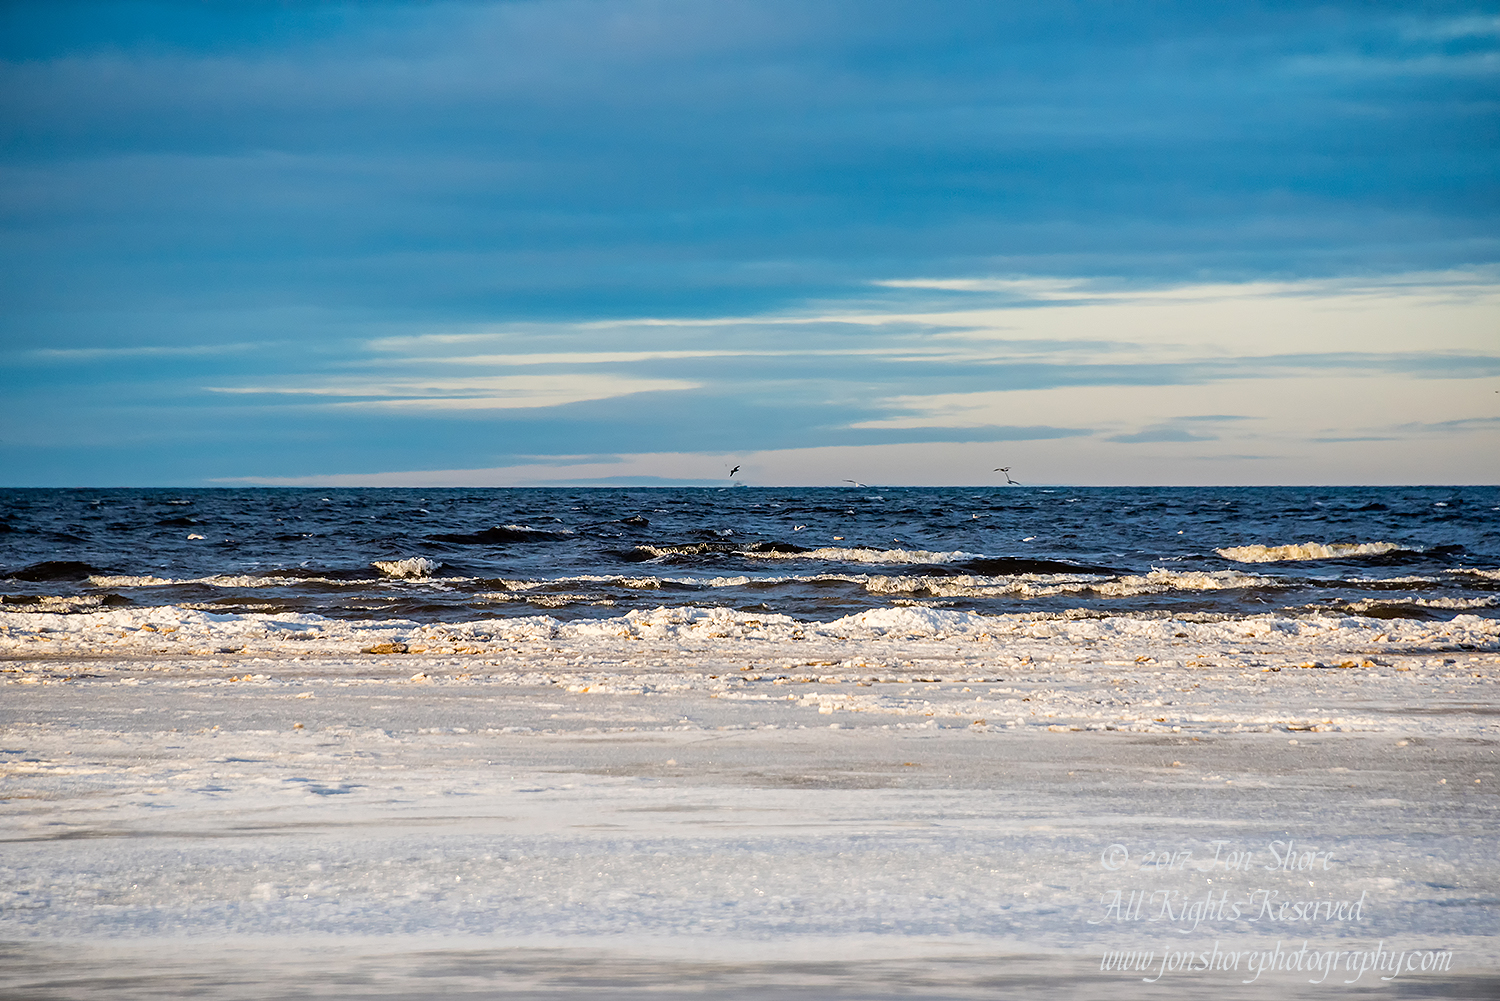 Baltic beach in winter. Nikkor 200mm